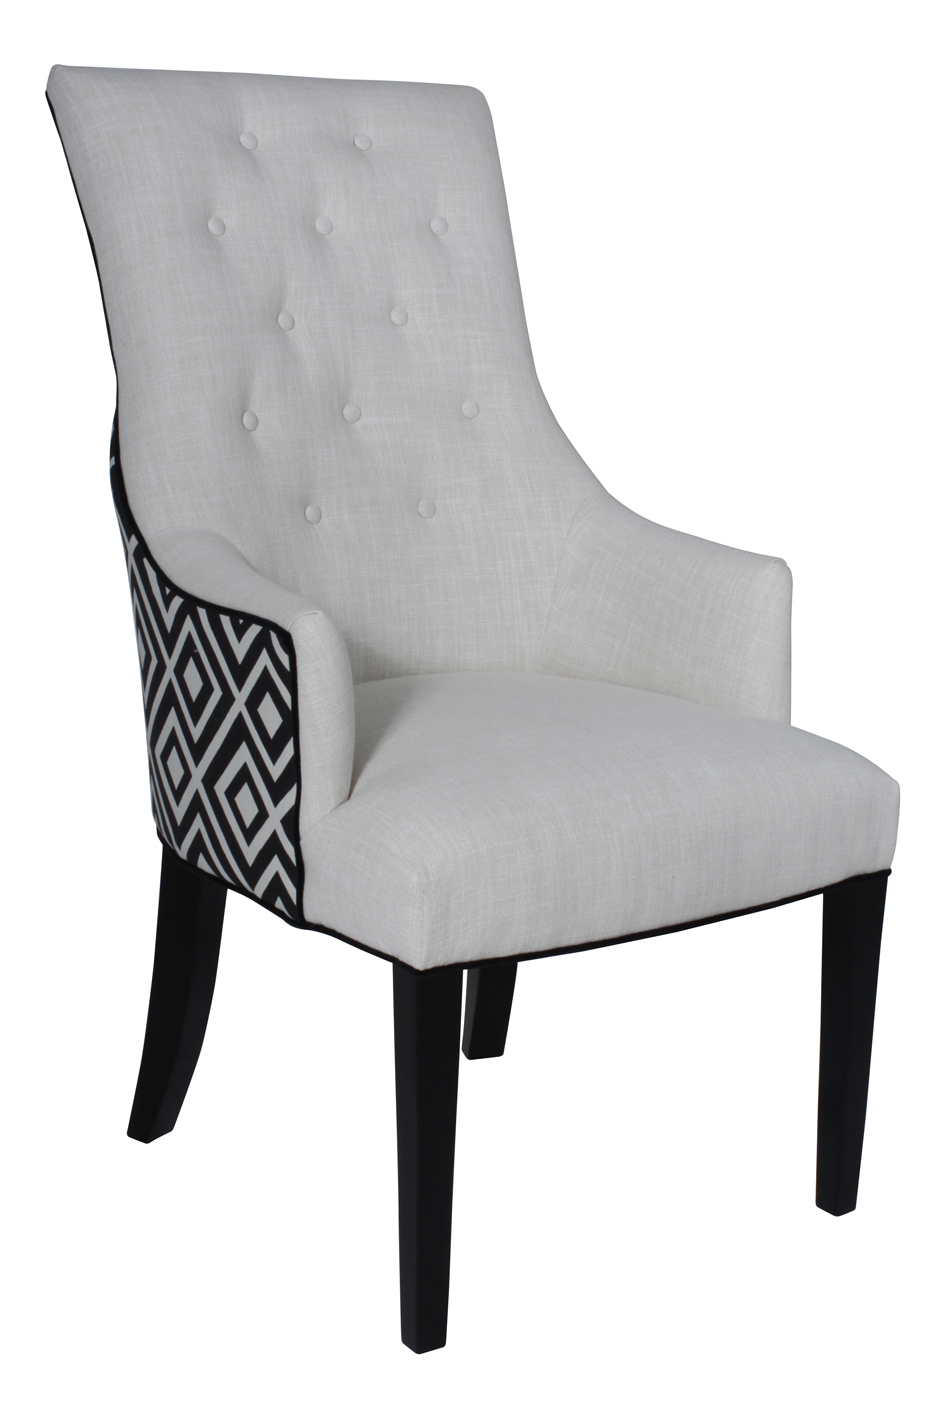 Brentwood Upholstered Restaurant Chair